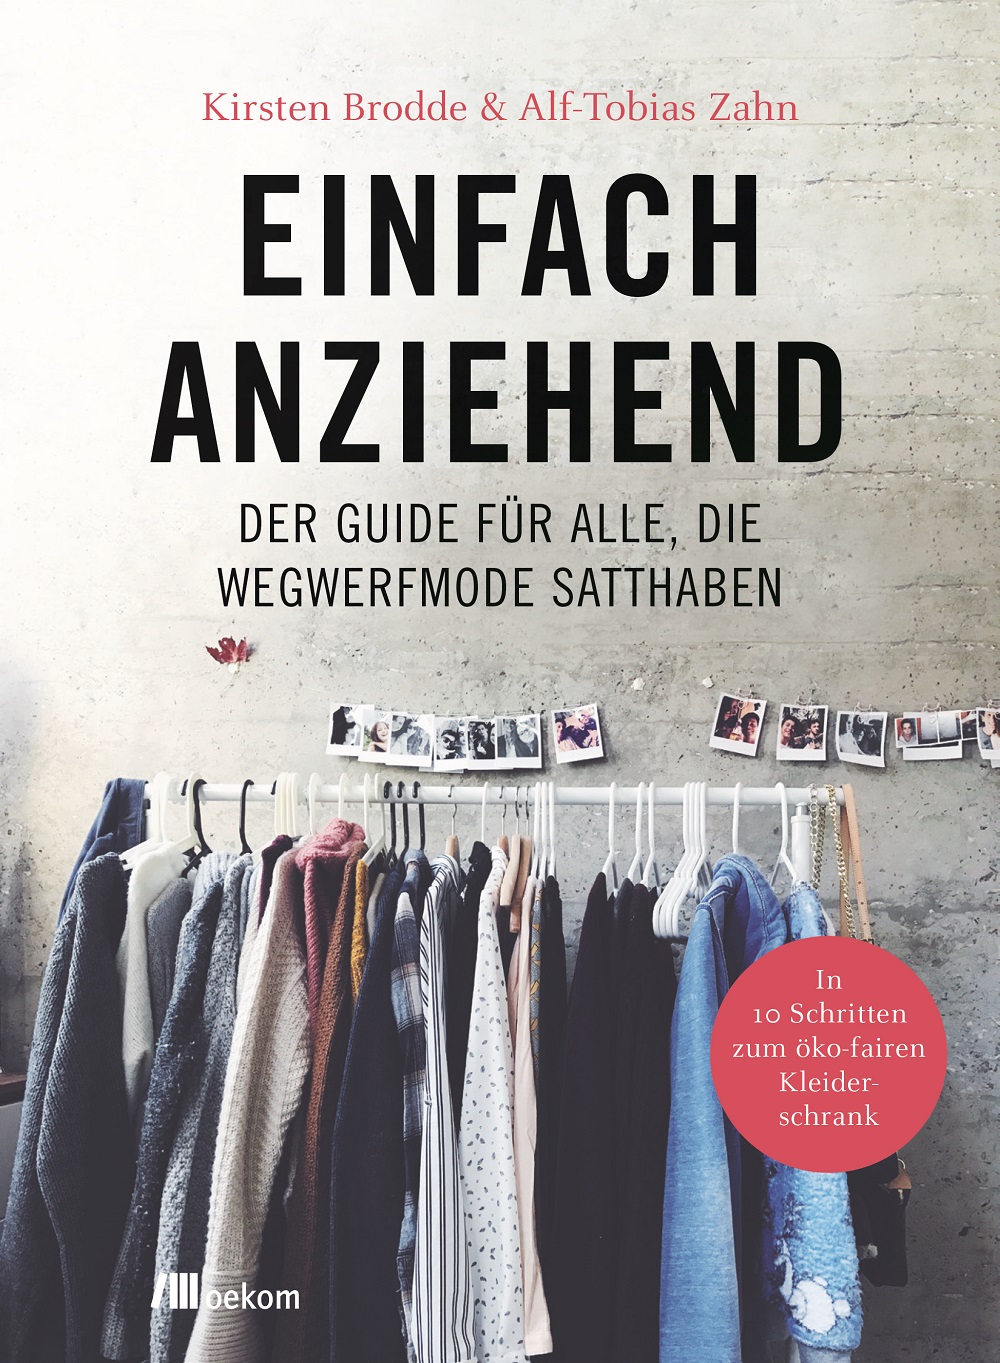 Buchcover 'Einfach anziehend' von Kirsten Brodde und Alf-Tobias Zahn